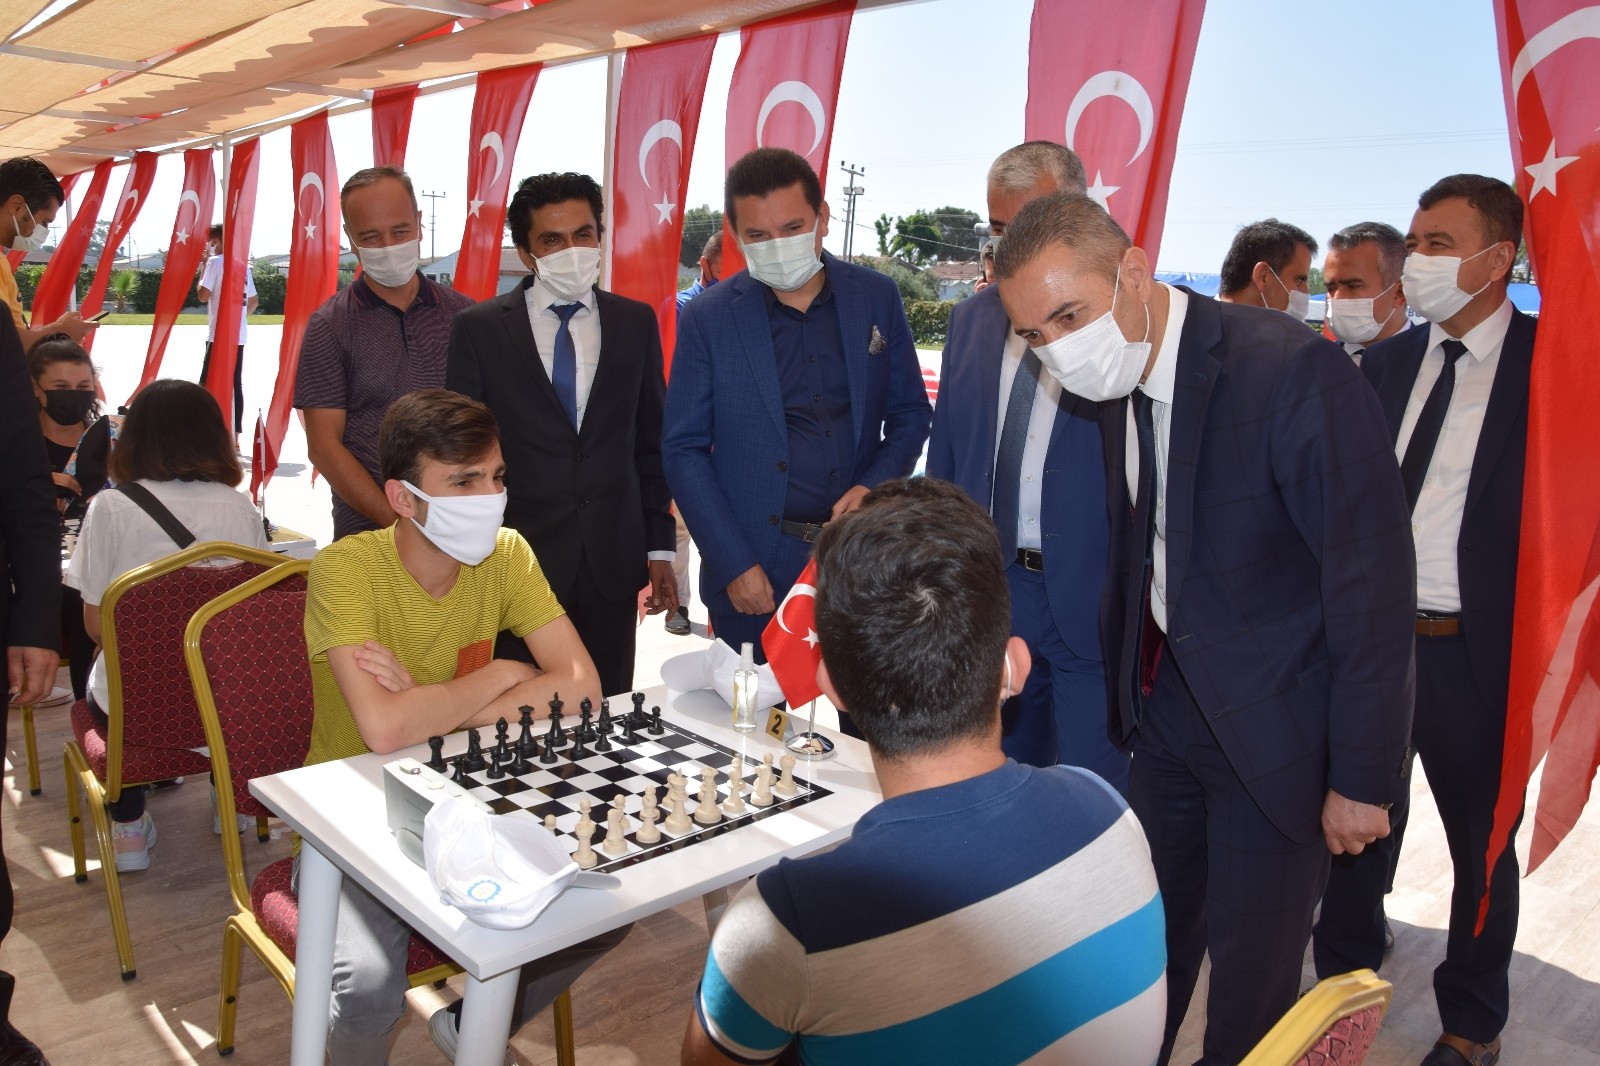 Bin okul projesi kapsamında düzenlenen satranç turnuvası başladı.